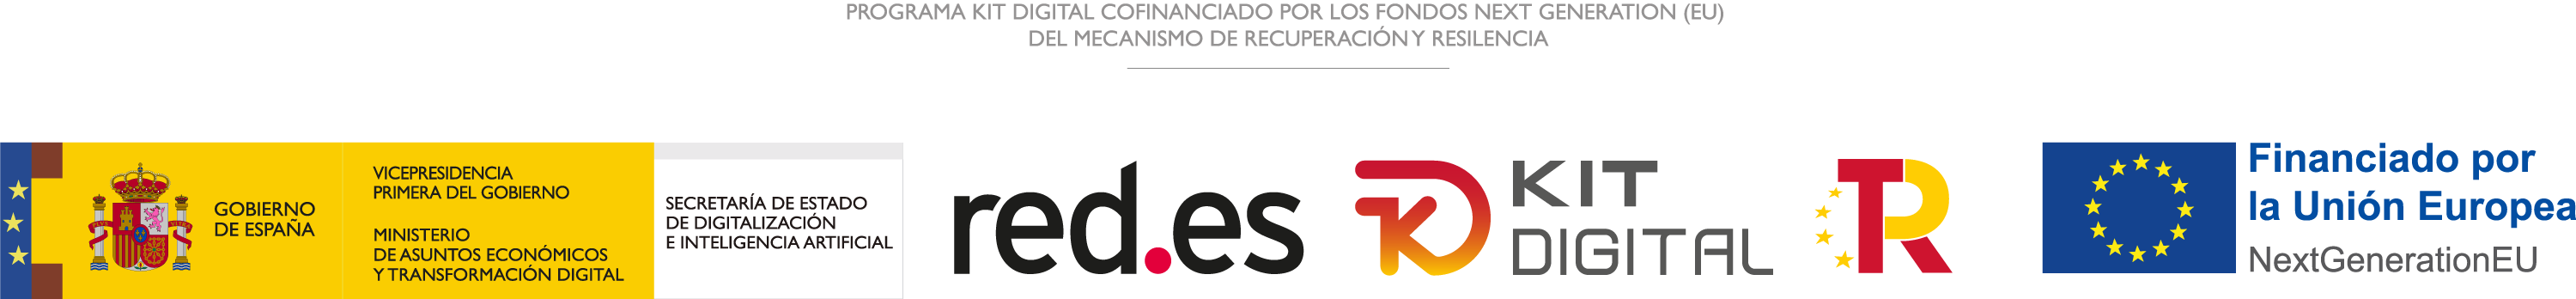 Programa Kit Digital cofinanciado por los fondos Next Generation (UE) del mecanismo de recuperación y resiliencia.